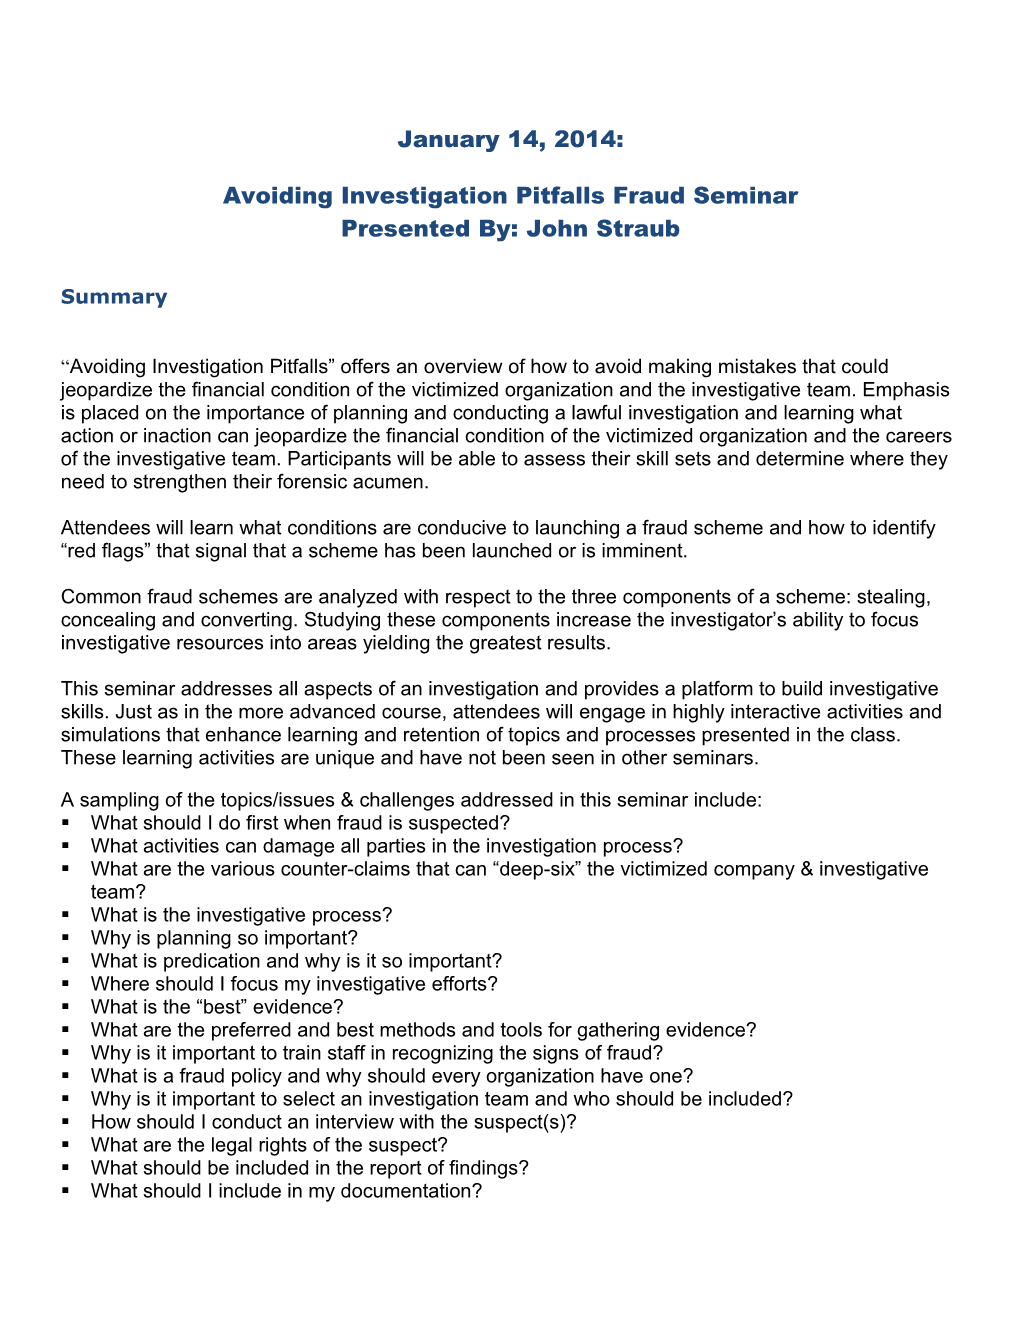 Avoiding Investigation Pitfalls Fraud Seminar